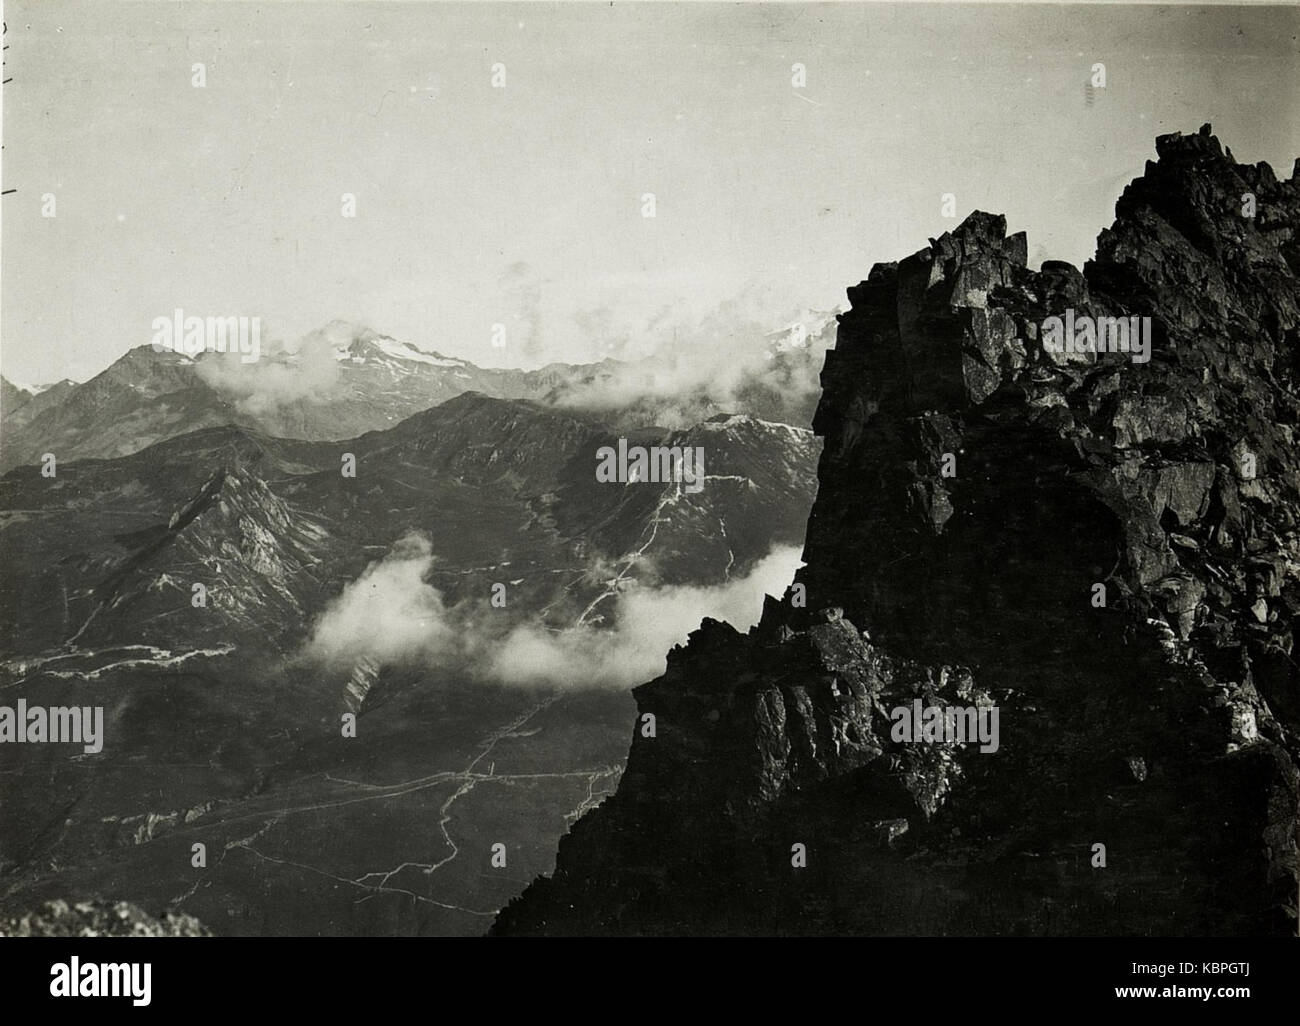 Standpunkt Passo Paradiso, Italienische Stellungen am Tonalepass mit la Cima di Cady, la cima dei tre signori. (BildID 15423311) Foto Stock